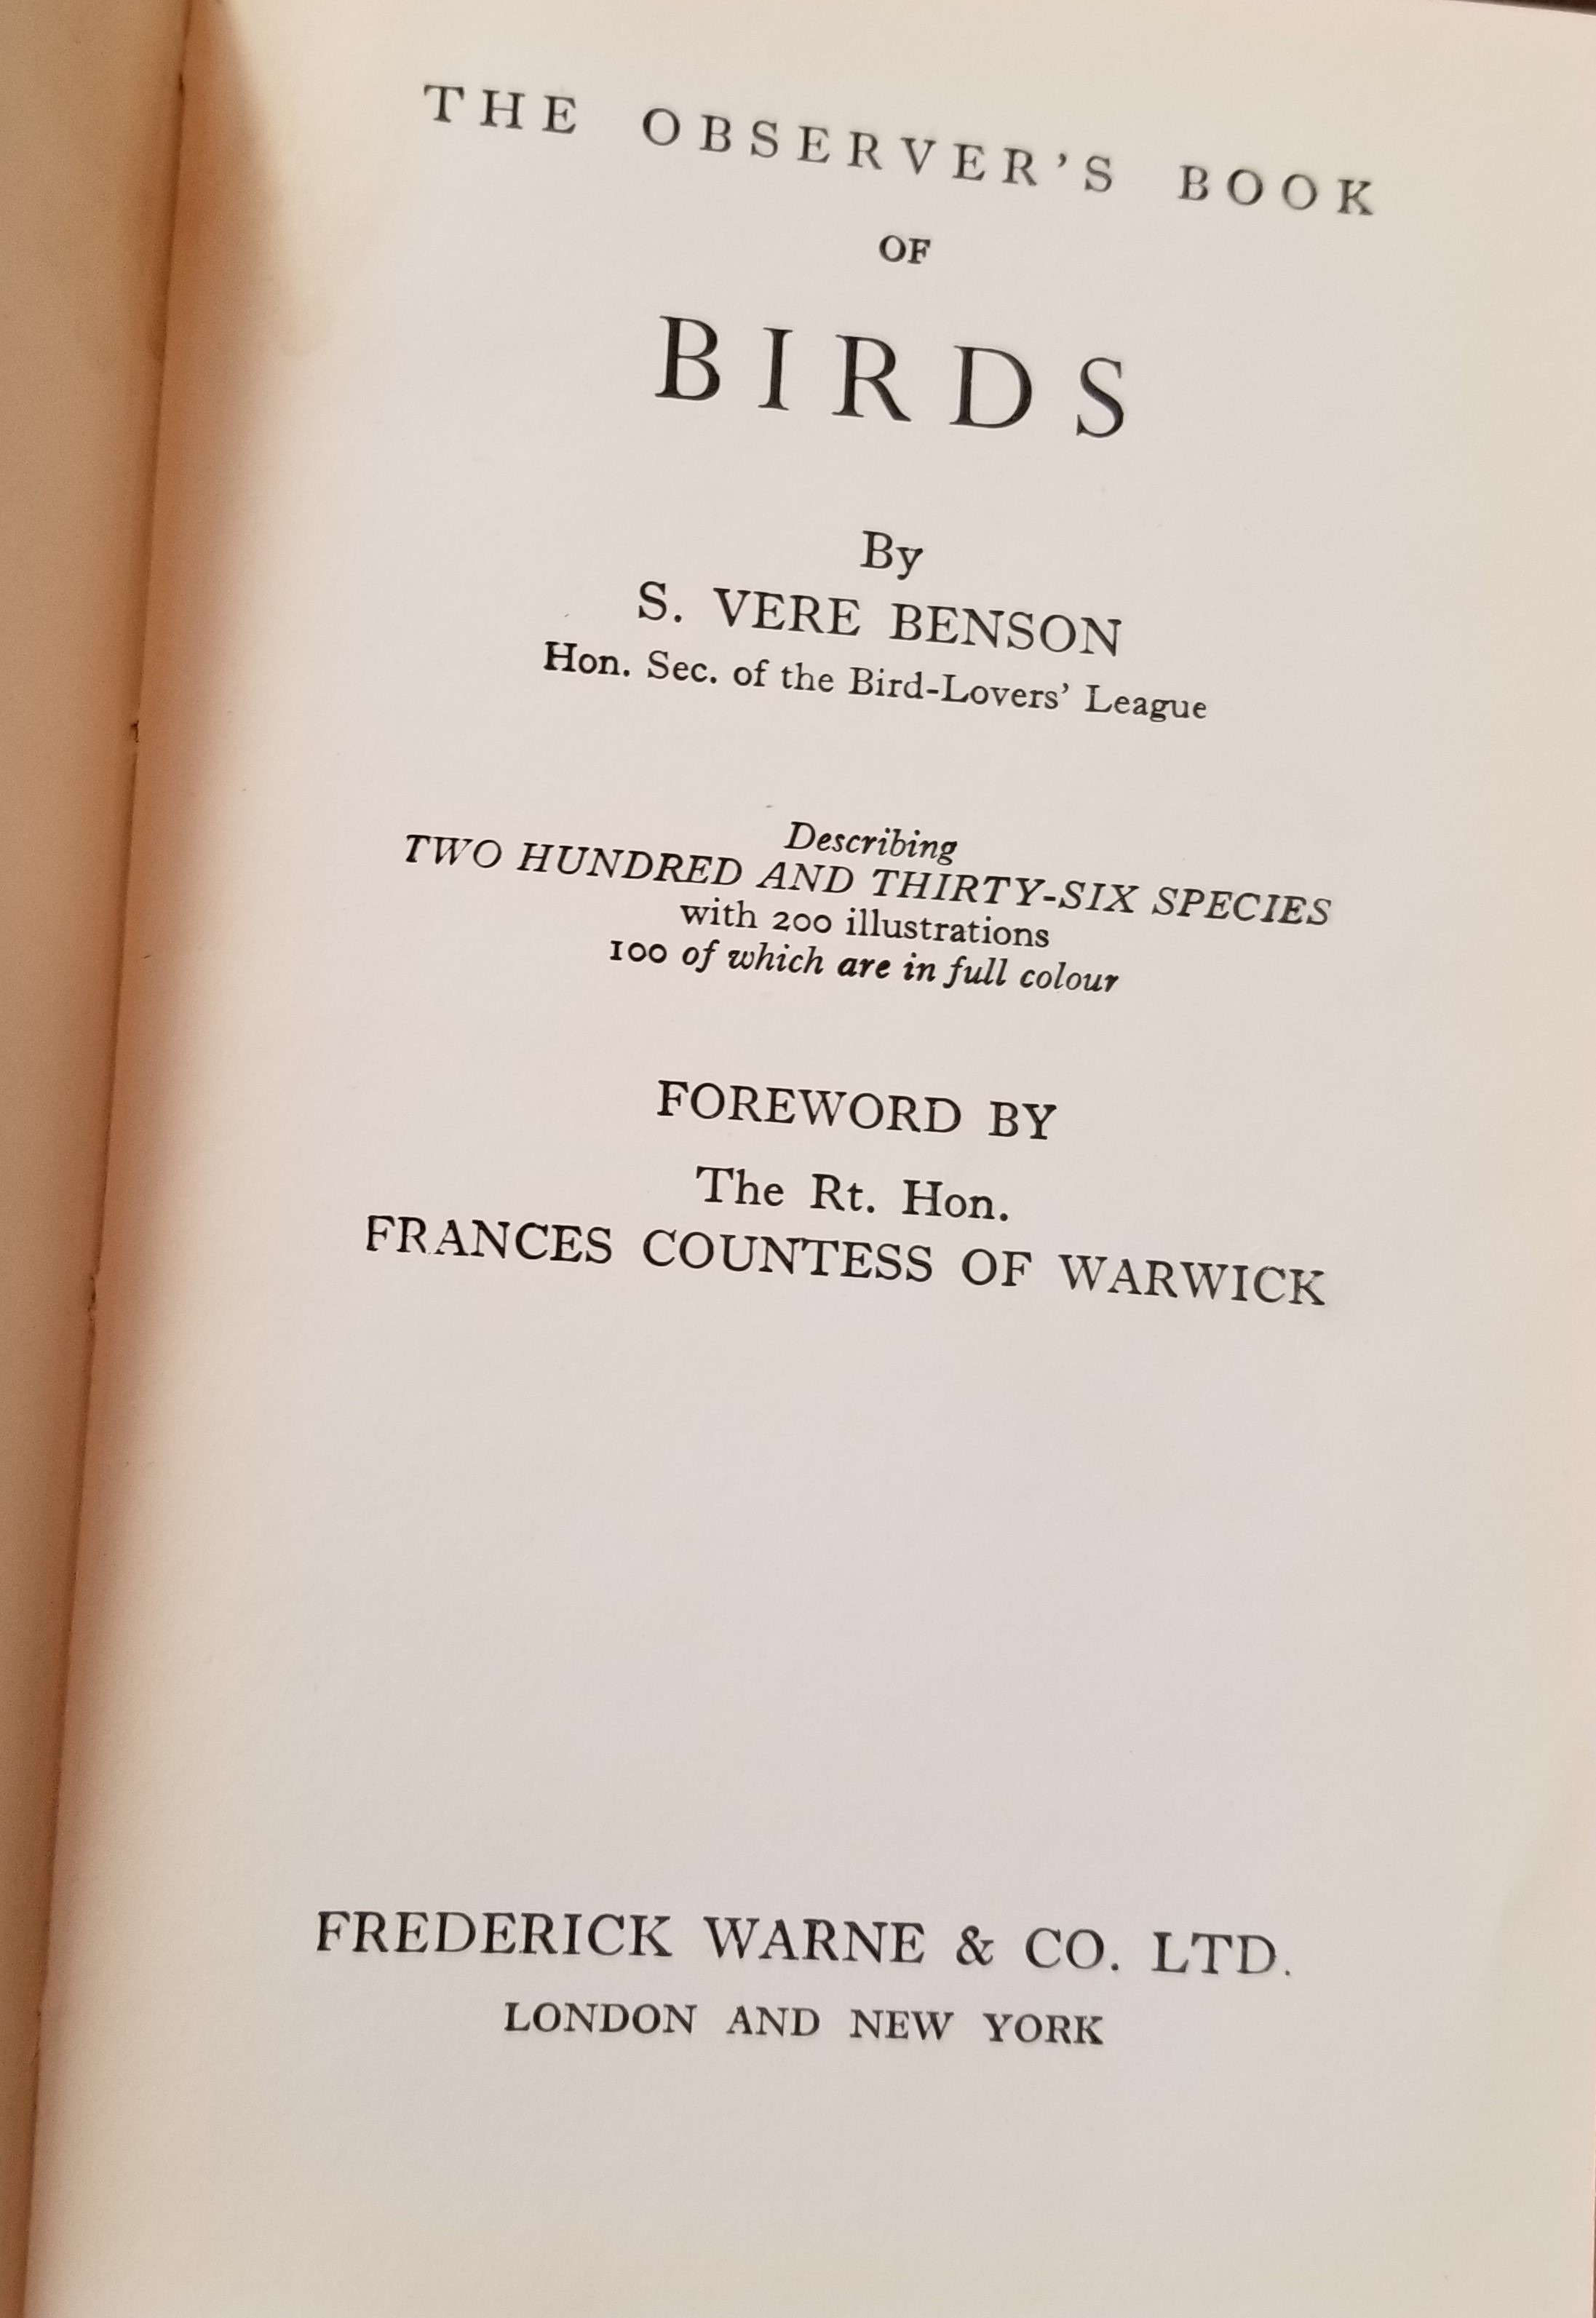 Welcome to my Bird Blog: Stories from a Lifelong Birder